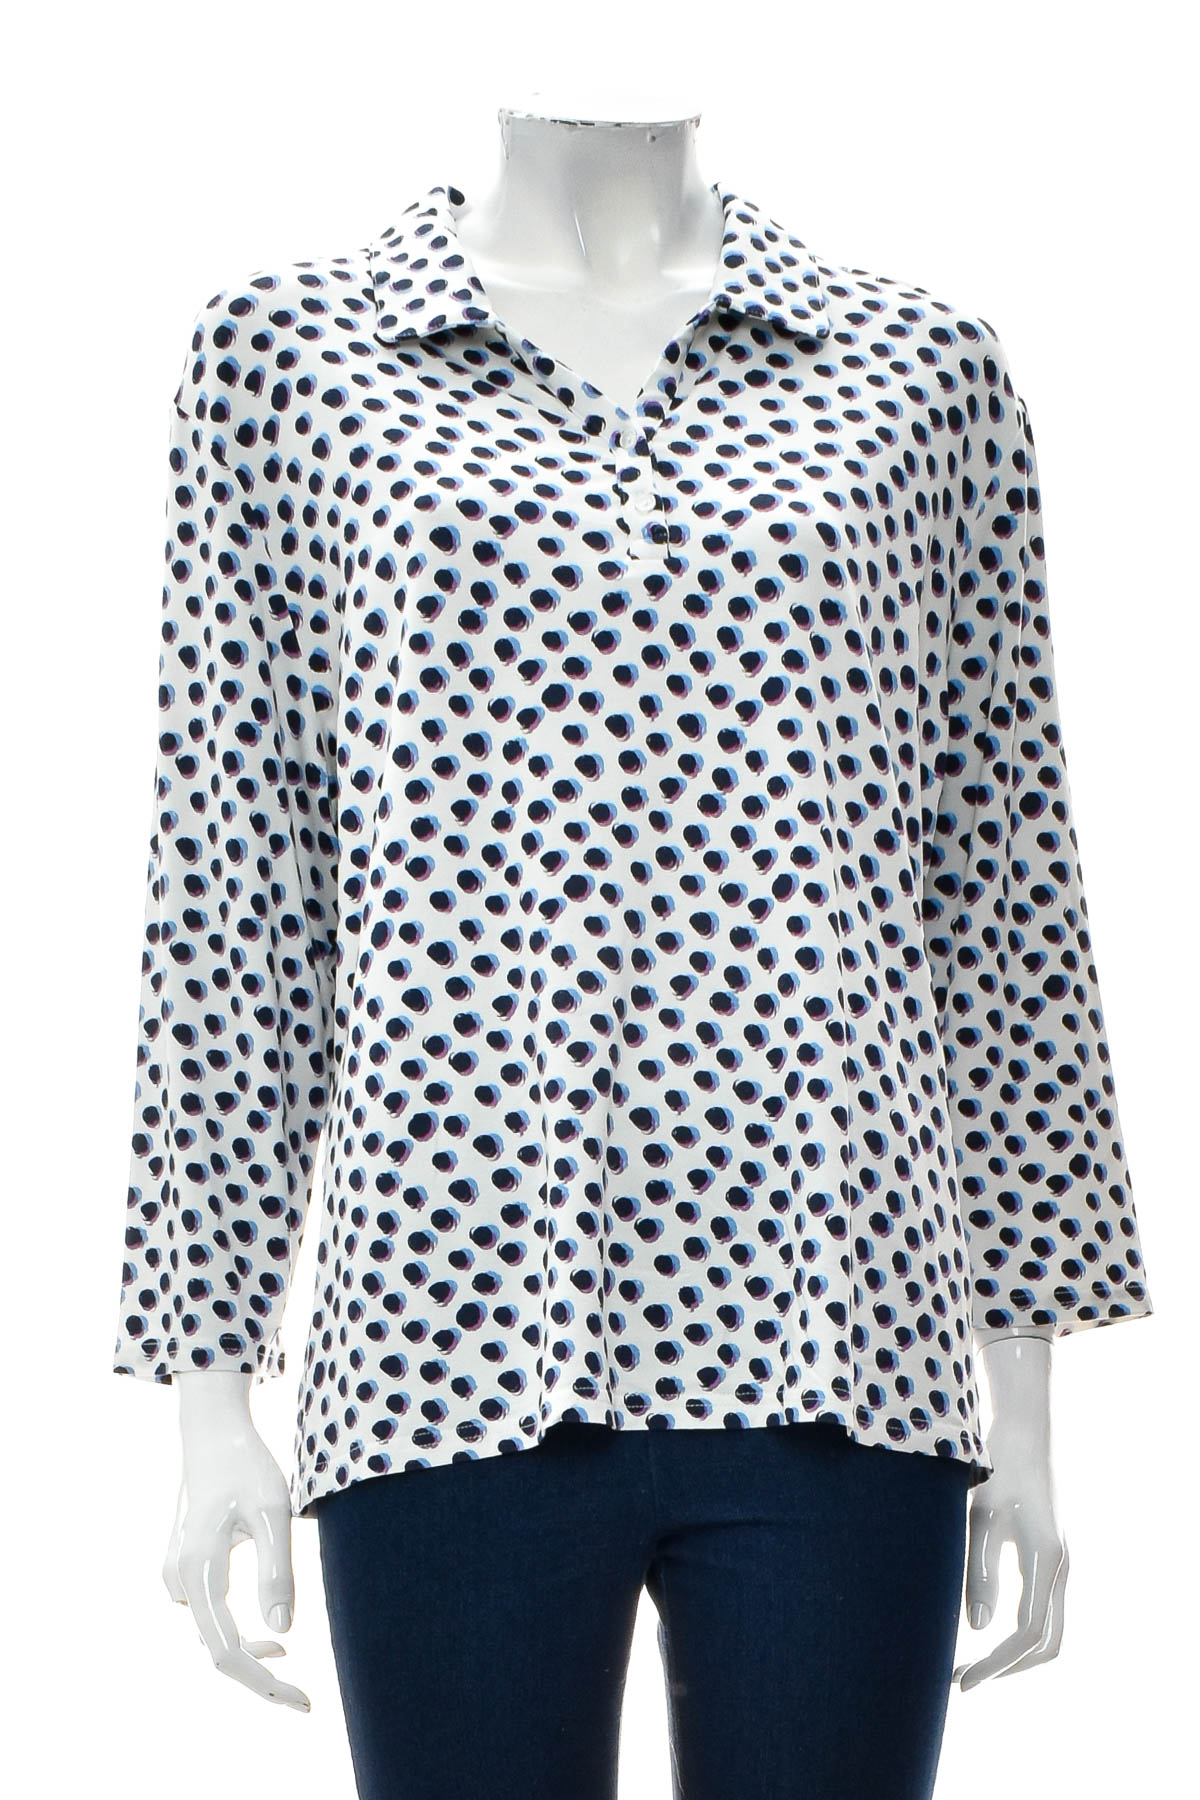 Women's blouse - Claude Arielle - 0